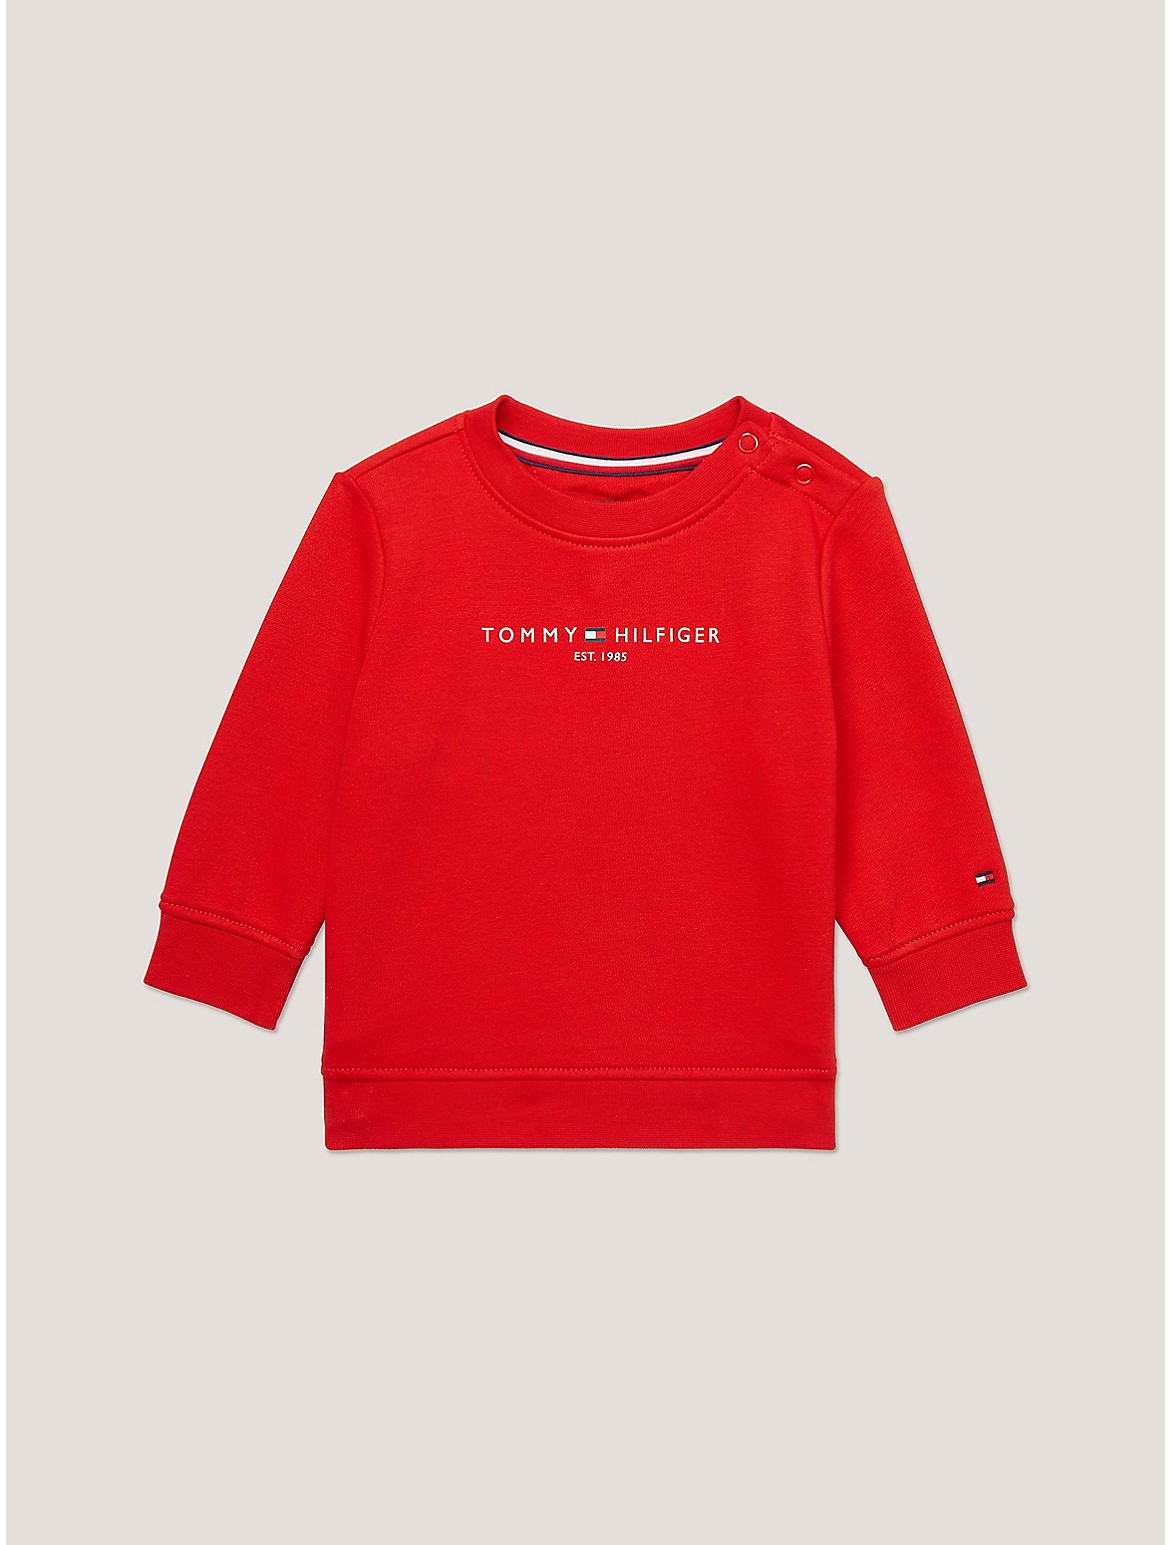 Tommy Hilfiger Boys' Babies' Tommy Logo Sweatshirt - Red - 12M